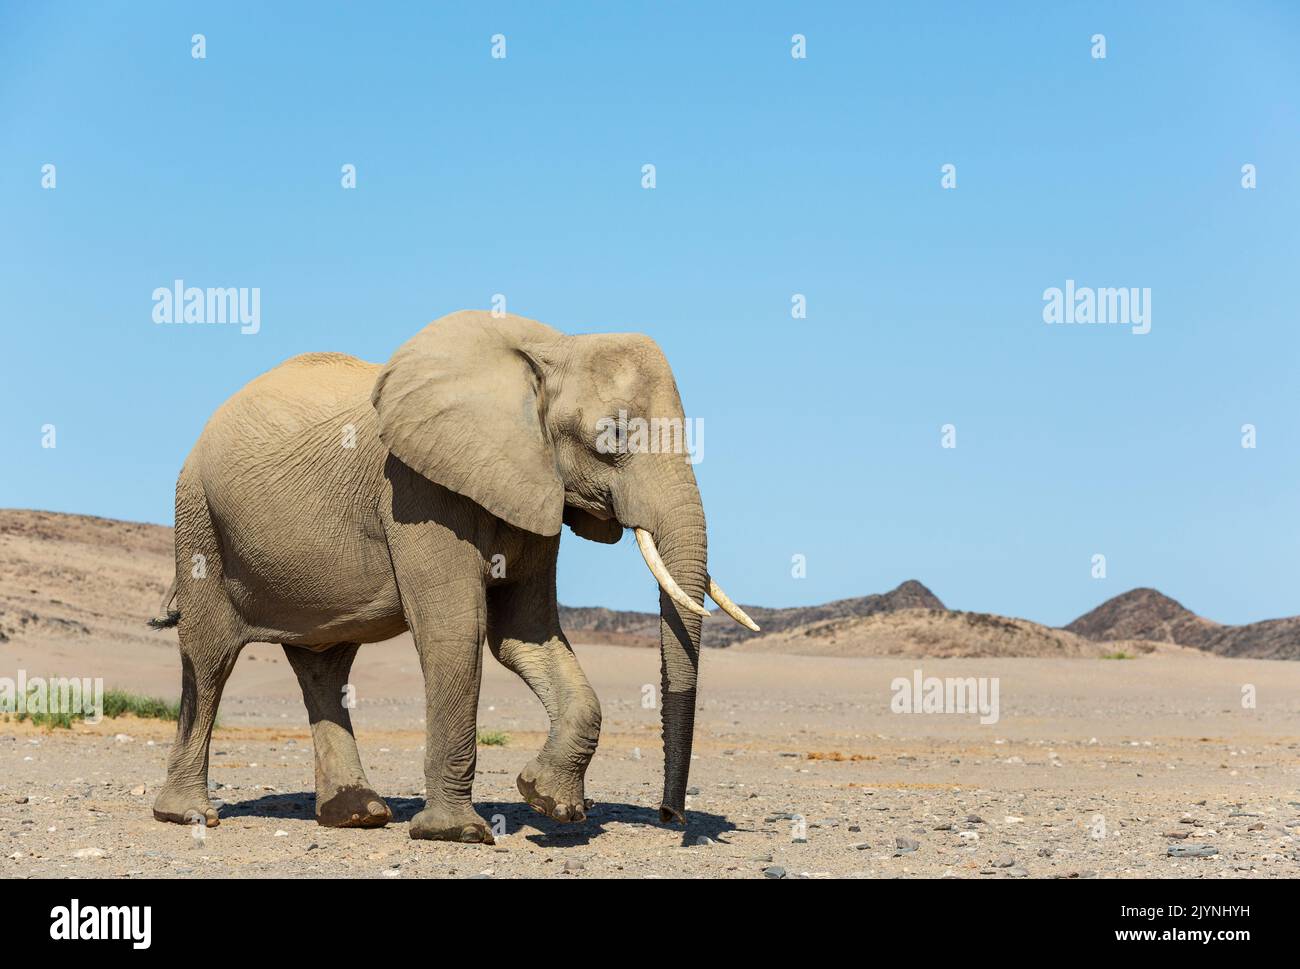 Éléphant d'Afrique (Loxodonta africana). Ce qu'on appelle l'éléphant du désert. Vache dans une plaine désertique à proximité de la rivière Hoanib. Damaraland, région de Kunene, Namibie. Banque D'Images